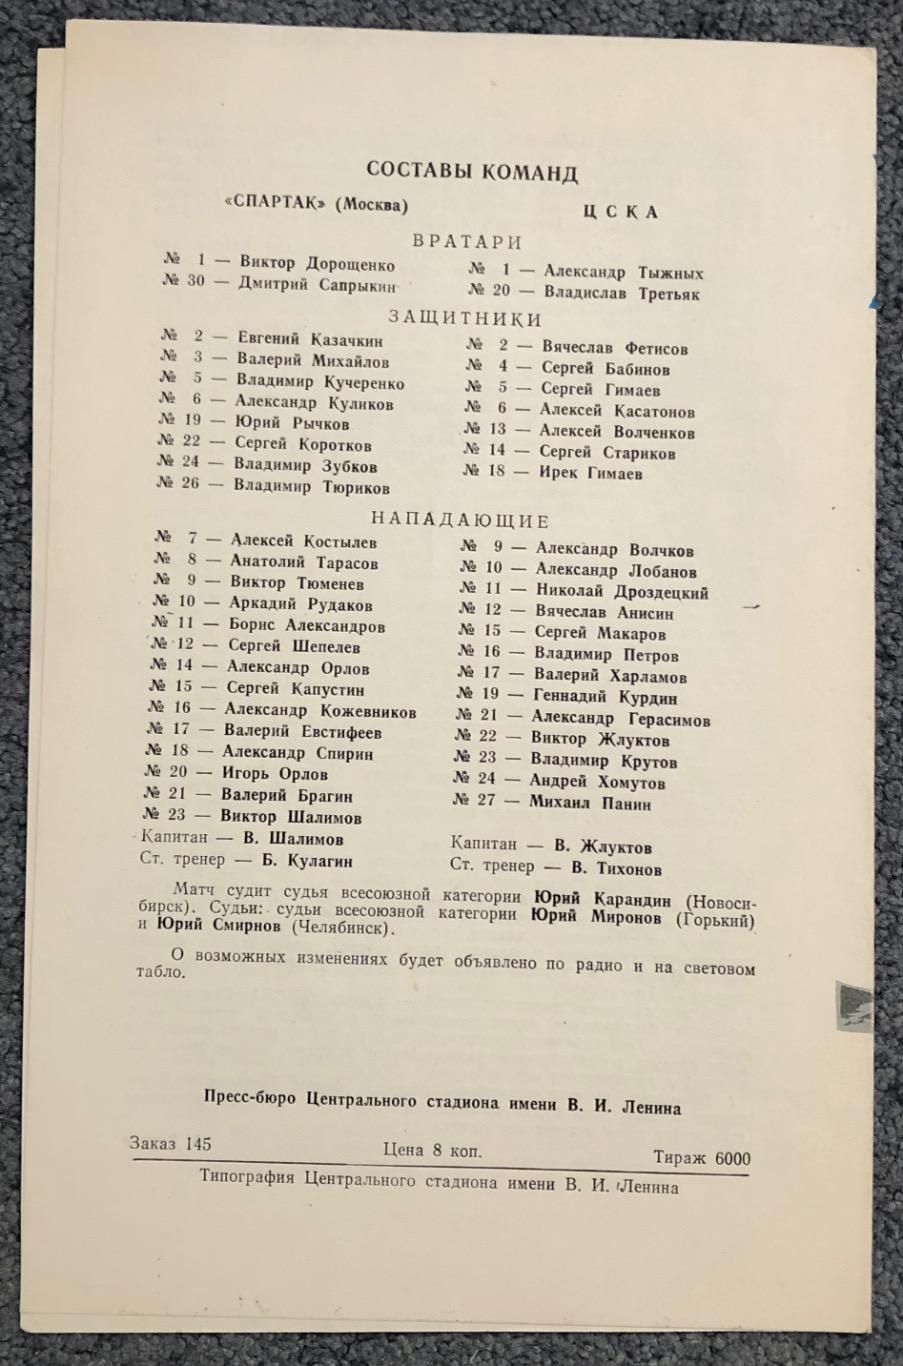 Спартак Москва - ЦСКА, 12.02.1981 1